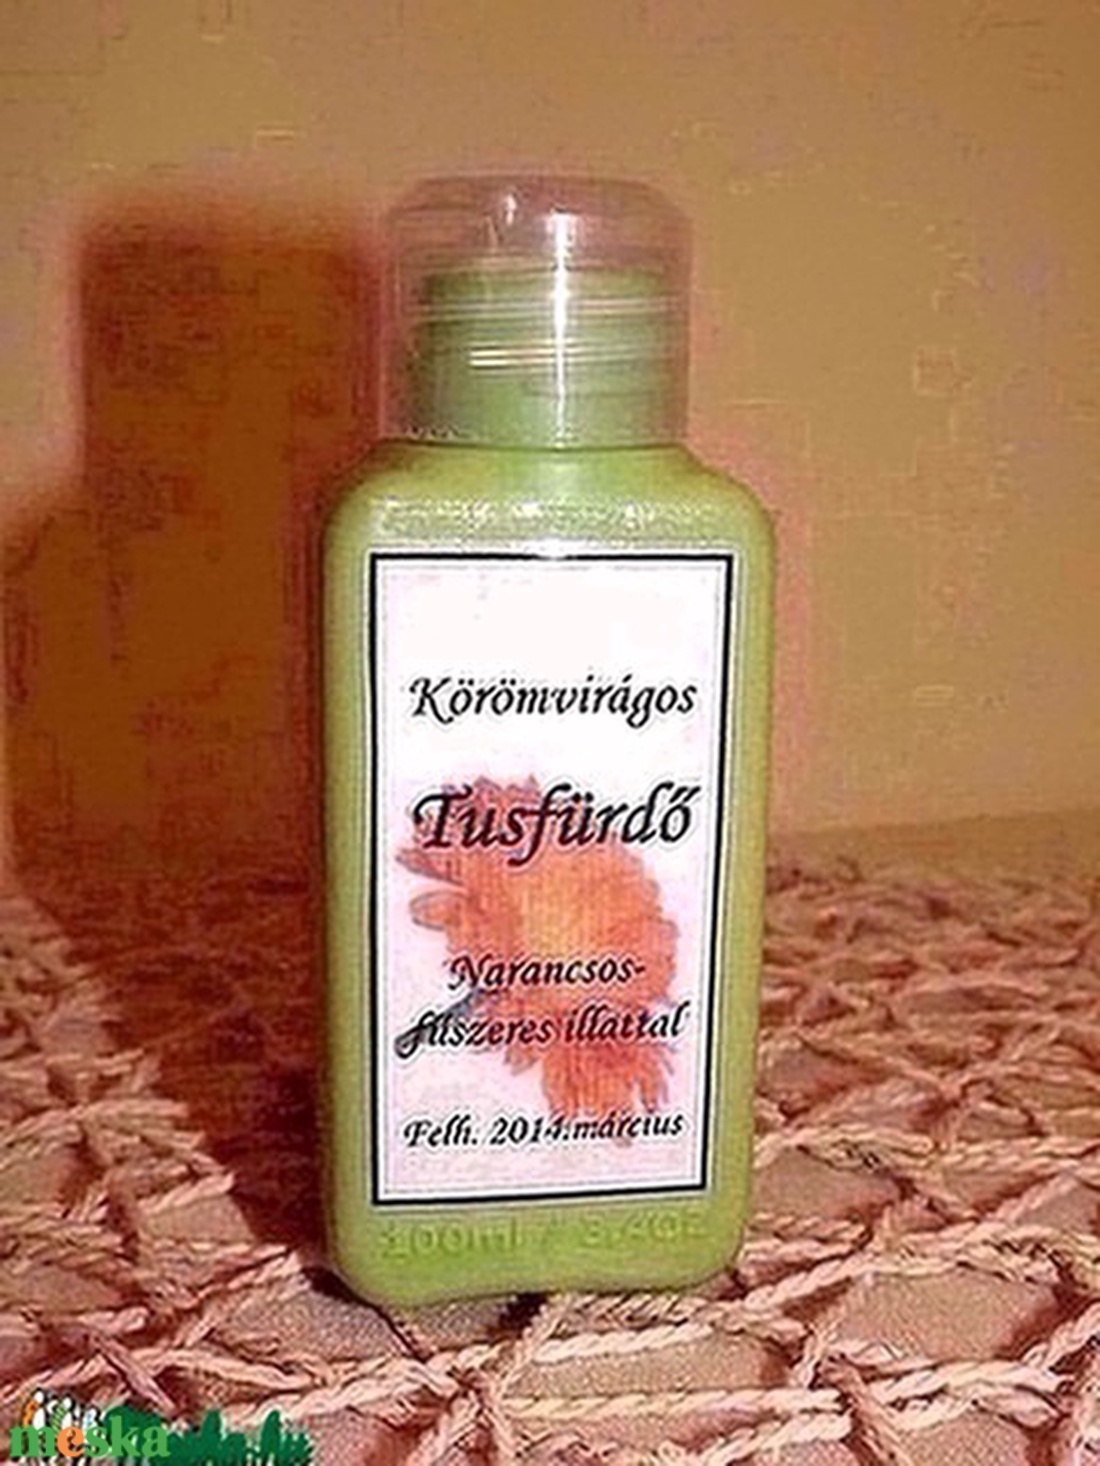 Körömvirágos tusfürdő fűszeres narancs illattal - szépségápolás - szappan & fürdés - kézműves tusfürdő - Meska.hu